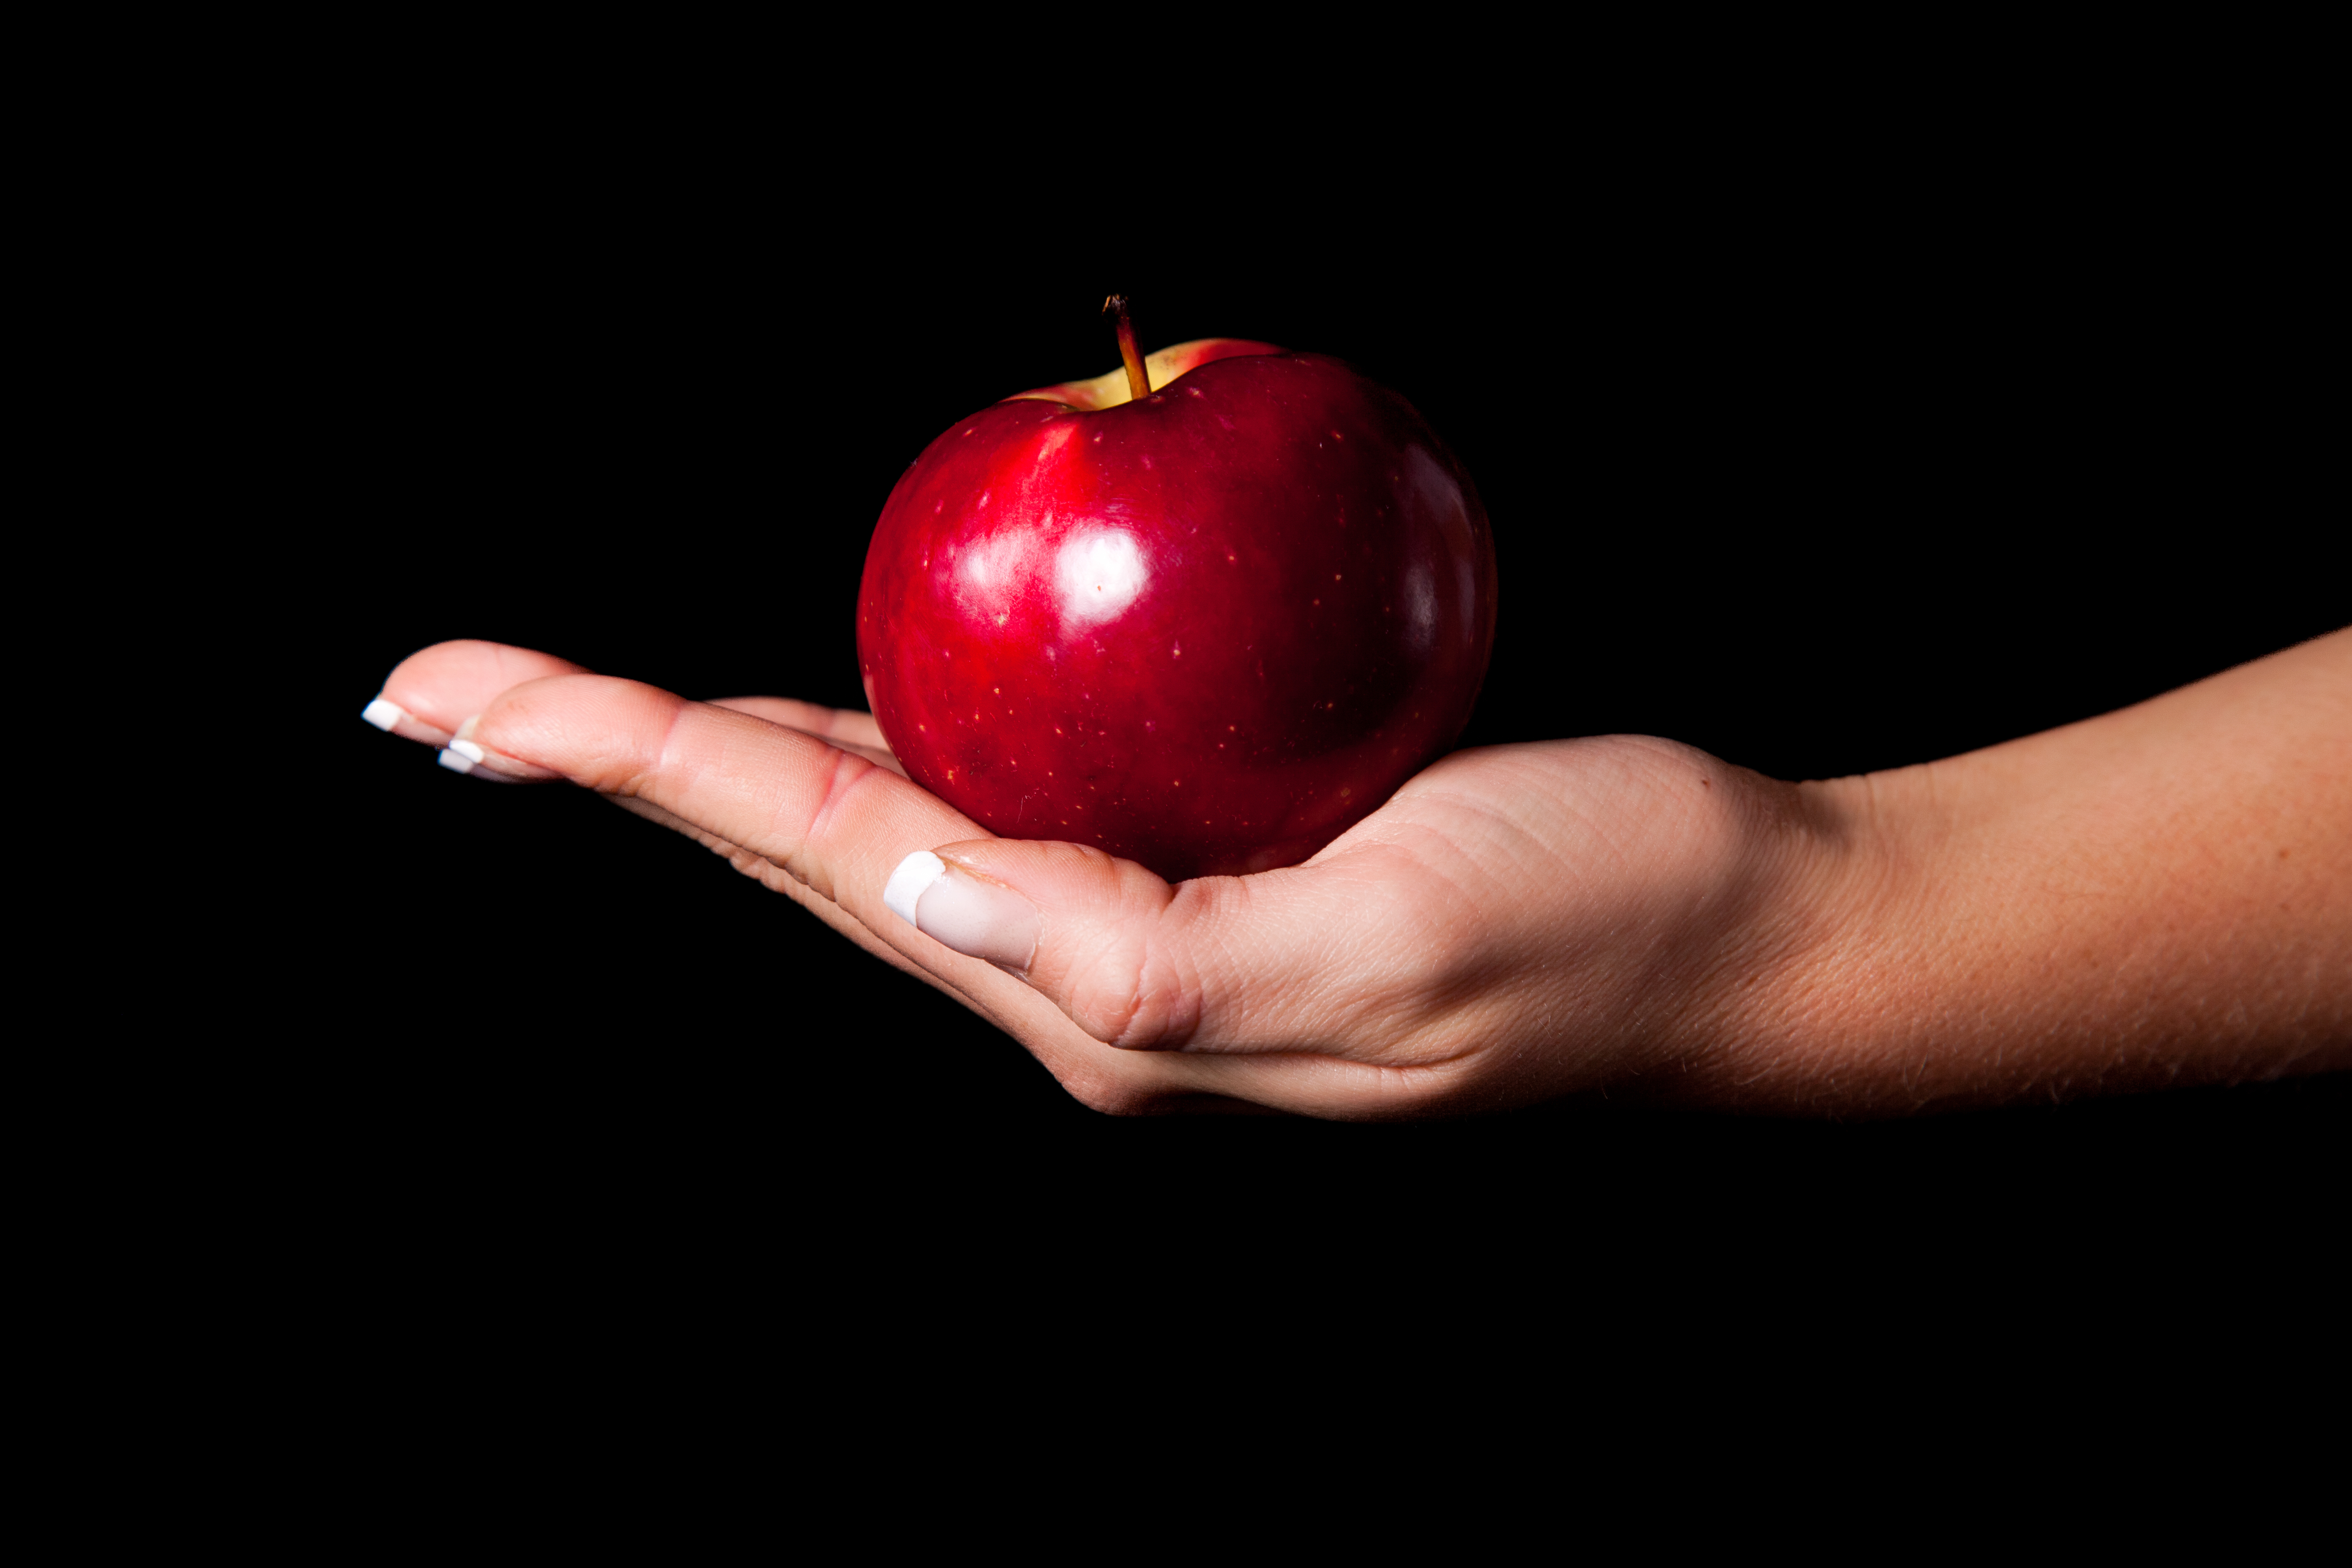 Кидает яблоко. Яблоко в руке. Яблоко на темном фоне. Яблоко в руке на темном фоне. Красное яблоко в руке.